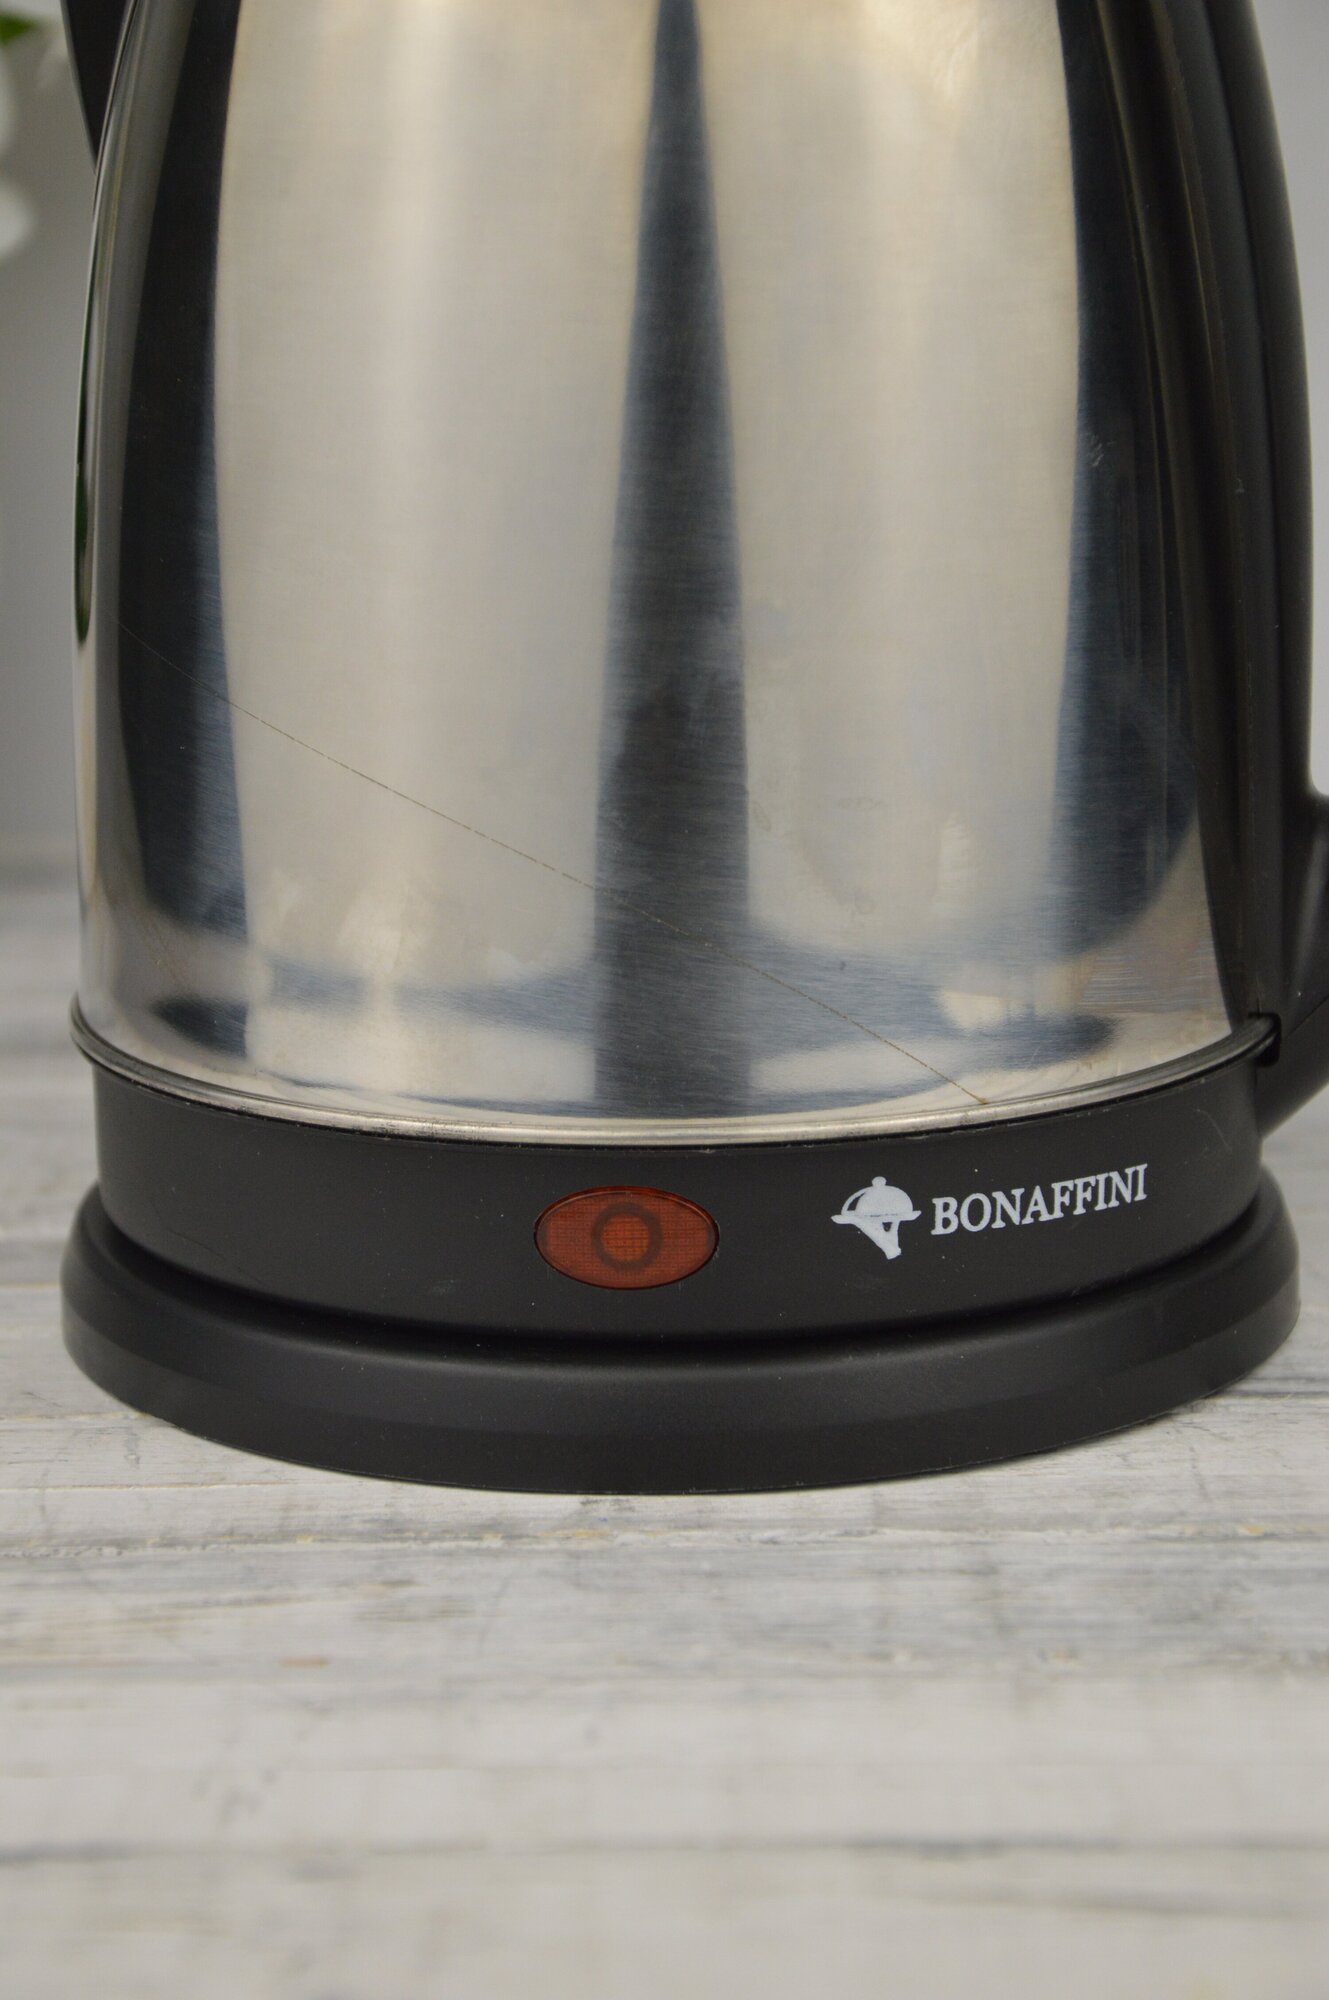 Электрический чайник Bonaffini ELK-0008, 1,8л, 1500 Вт, диск, металл / электрочайники - фотография № 11